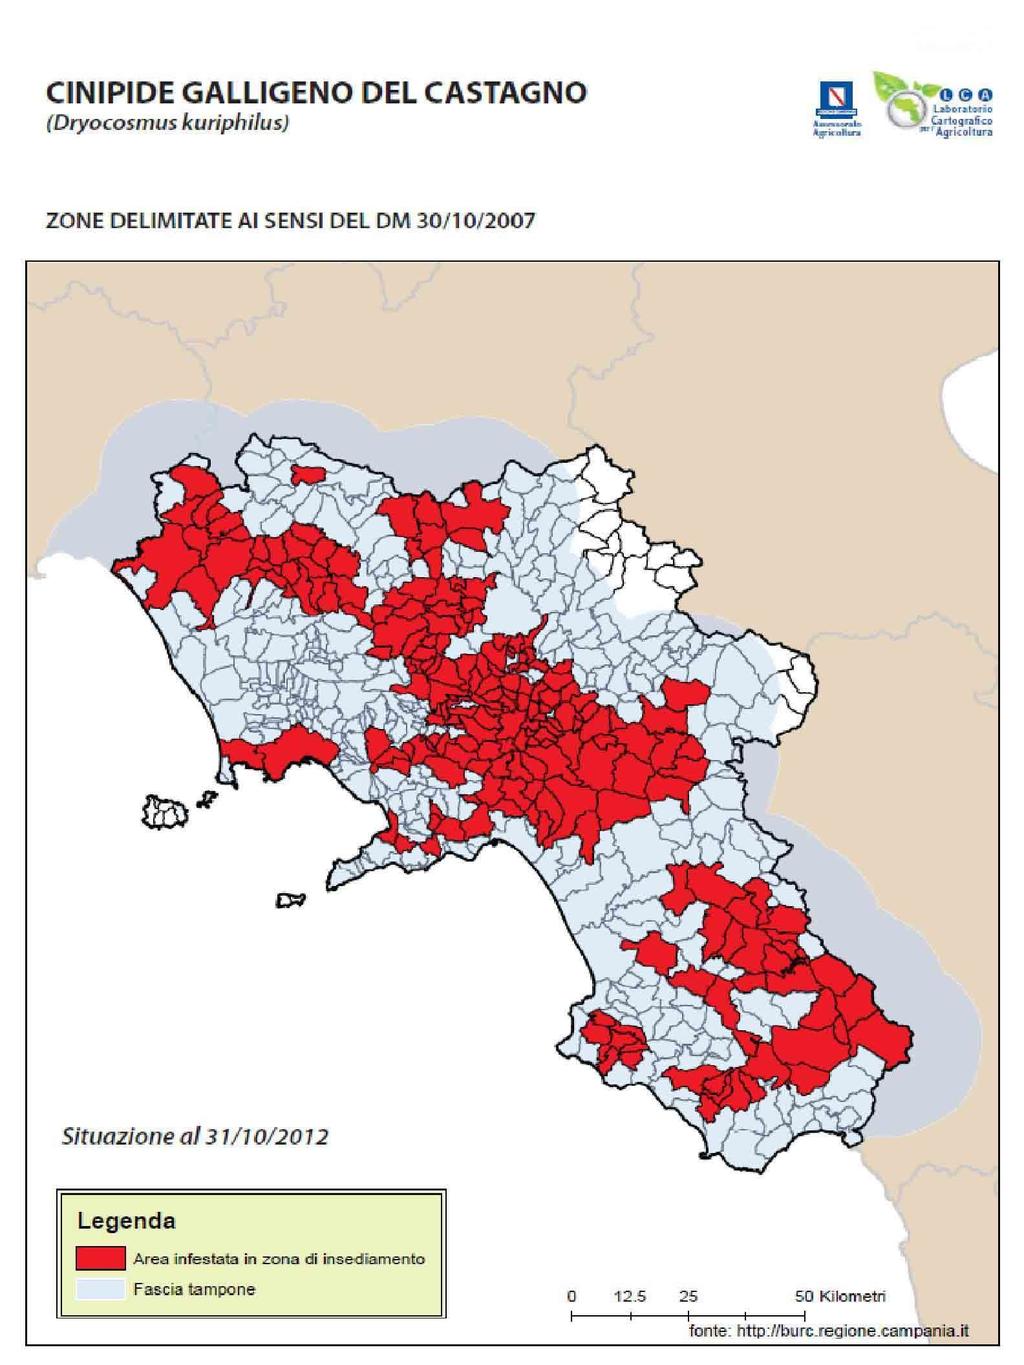 Negli ambienti della Campania, l elevata siccità primaverile può costituire una forte limitazione all uso dei nematodi.